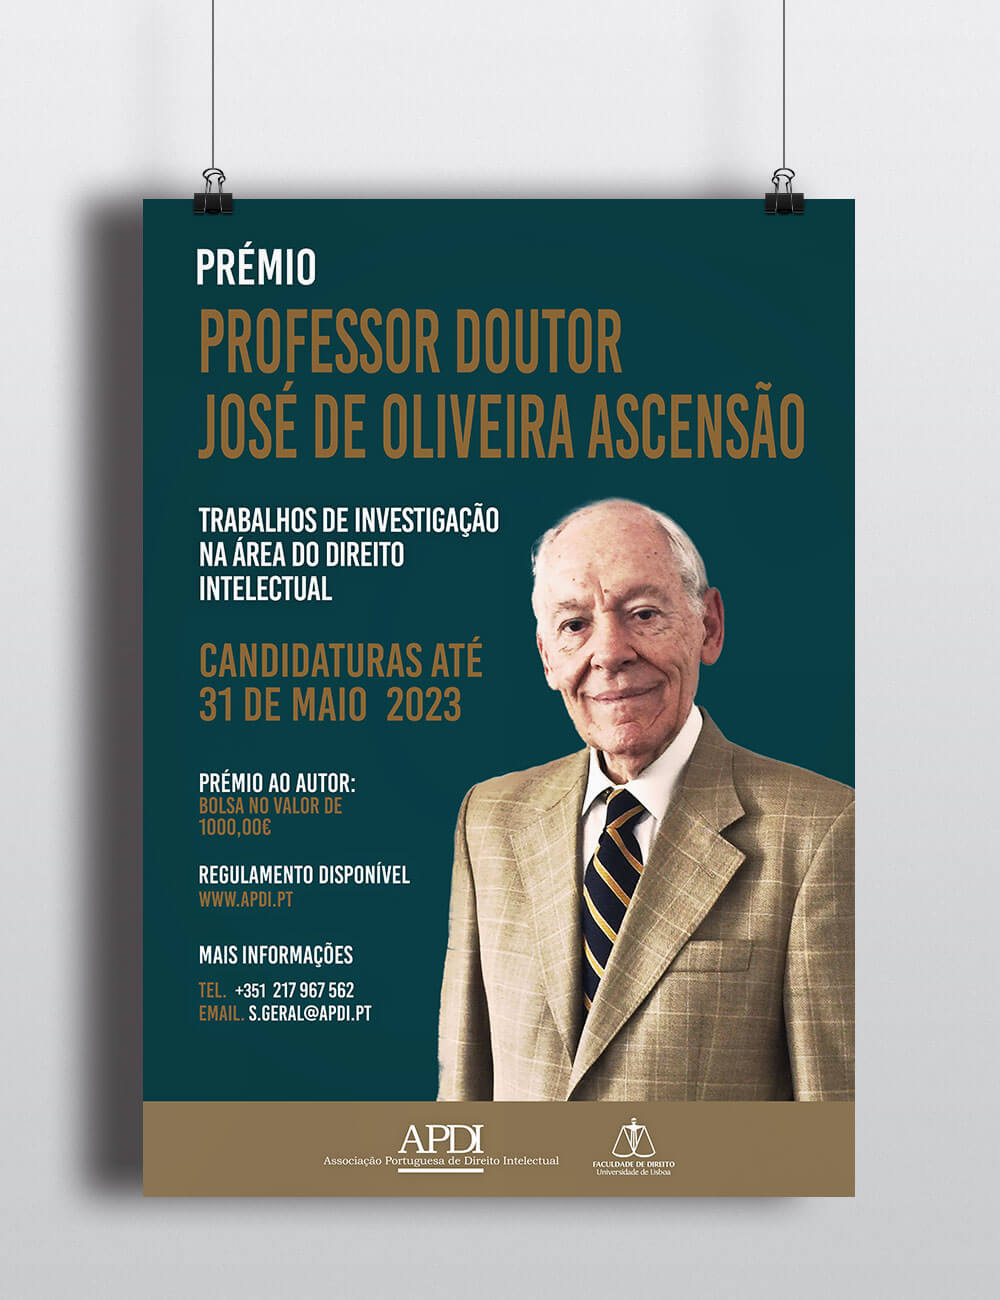 PRÉMIO PROFESSOR DOUTOR JOSÉ DE OLIVEIRA ASCENSÃO 2023